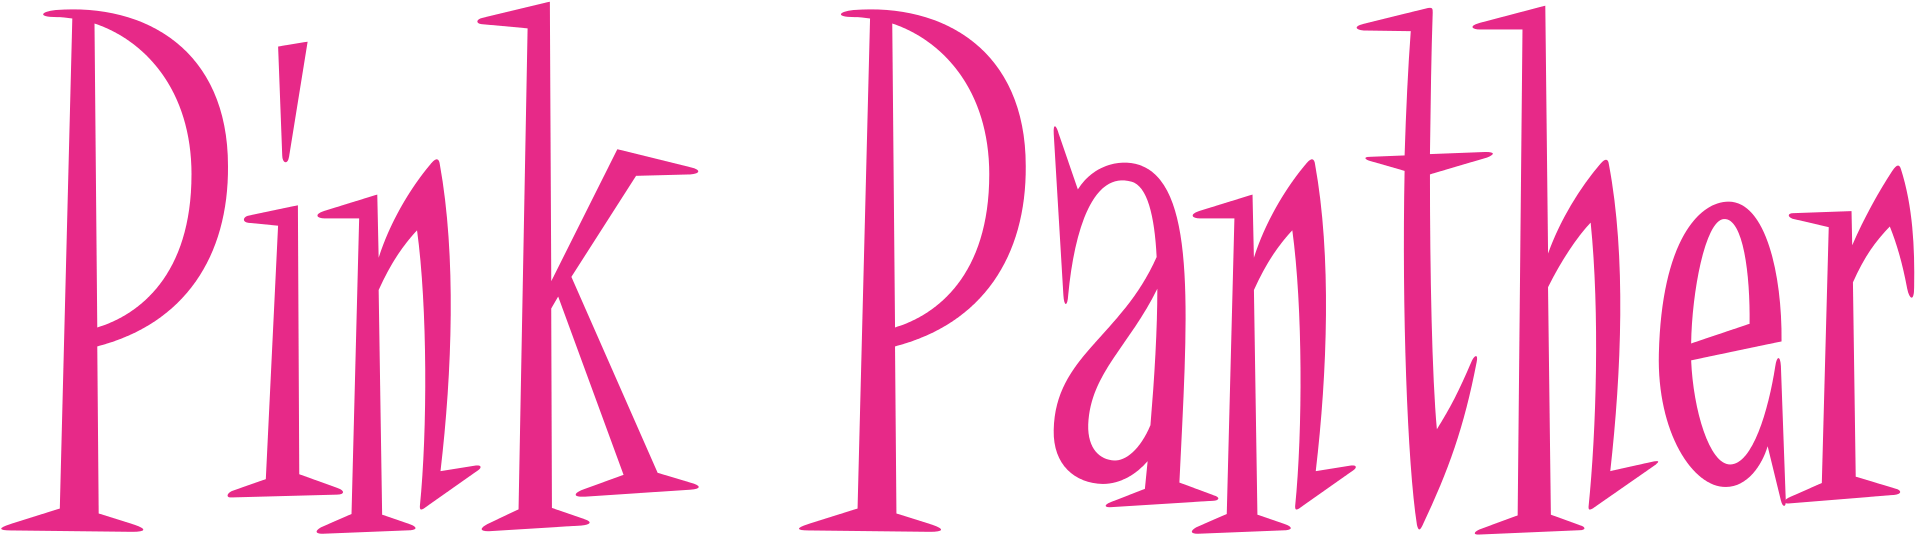 Pink Panther Logo PNG